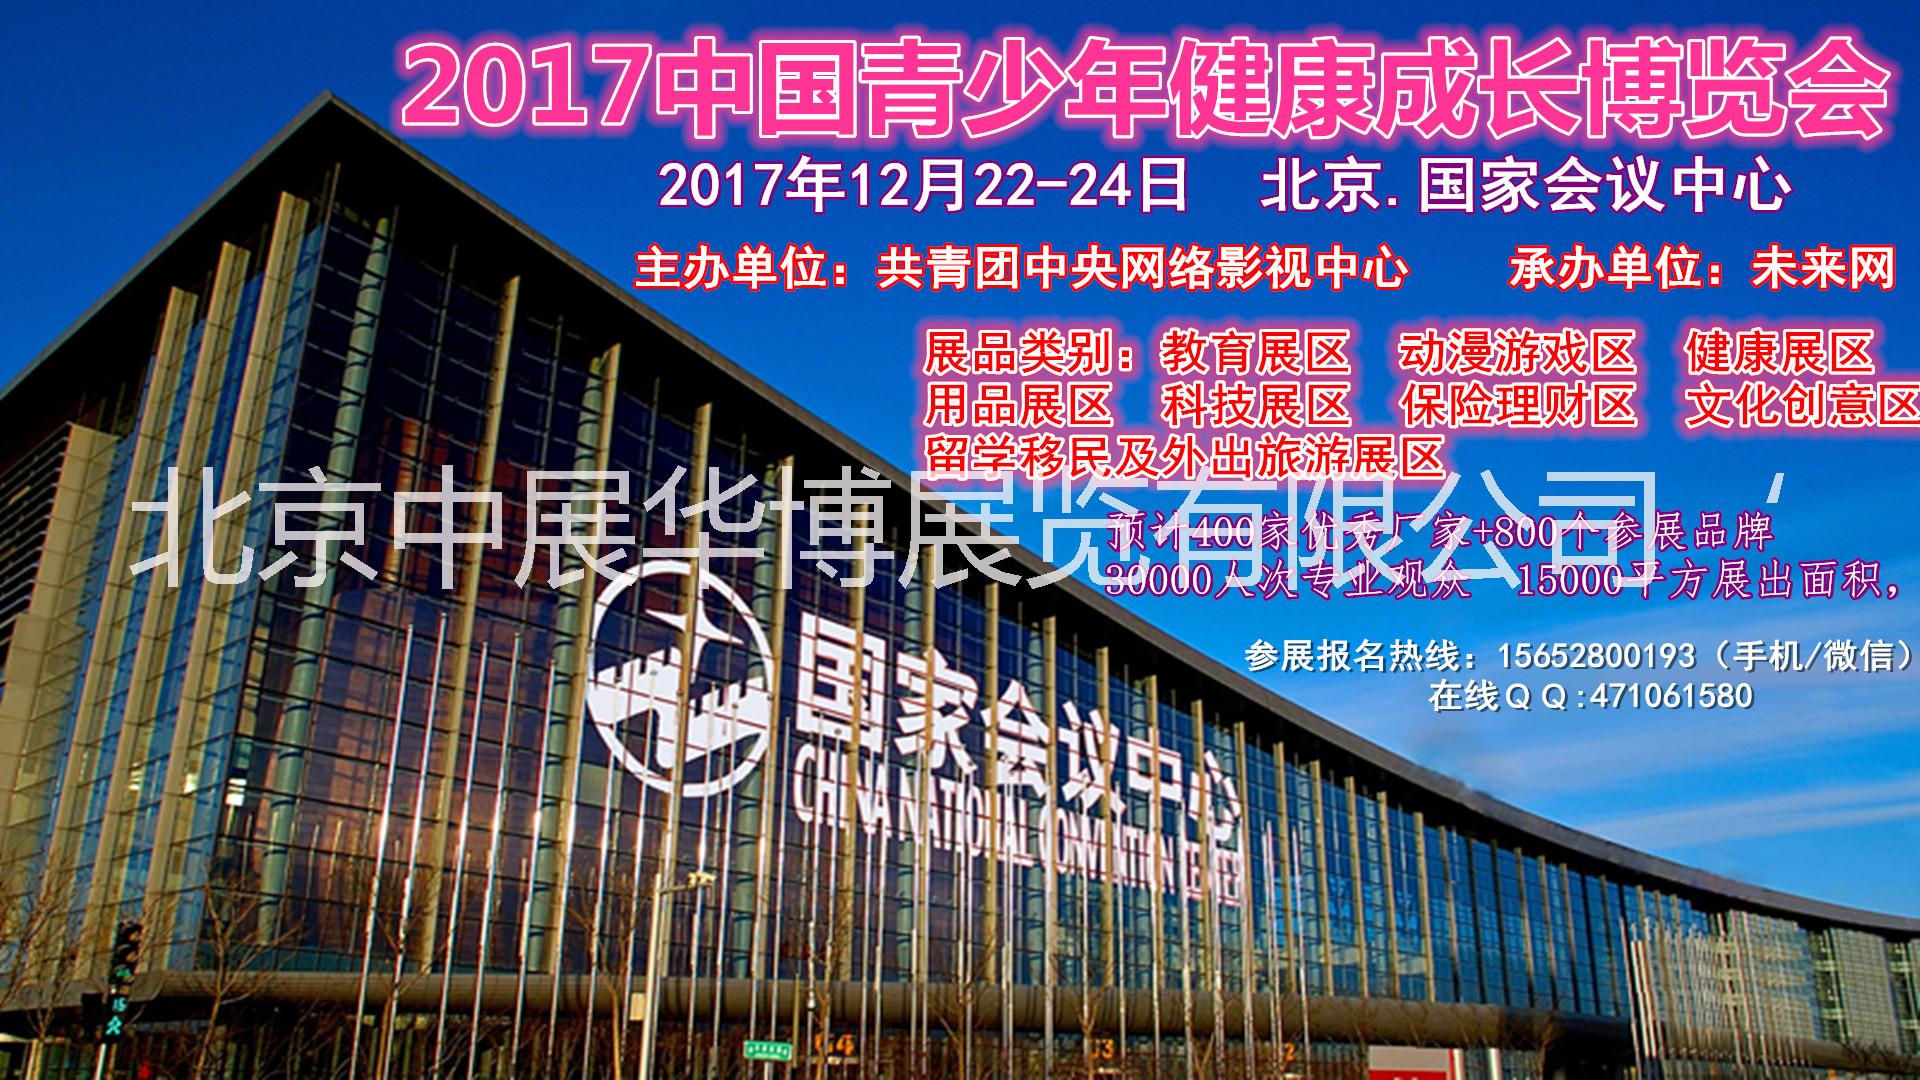 2017中国青少年健康成长博览会(官网)